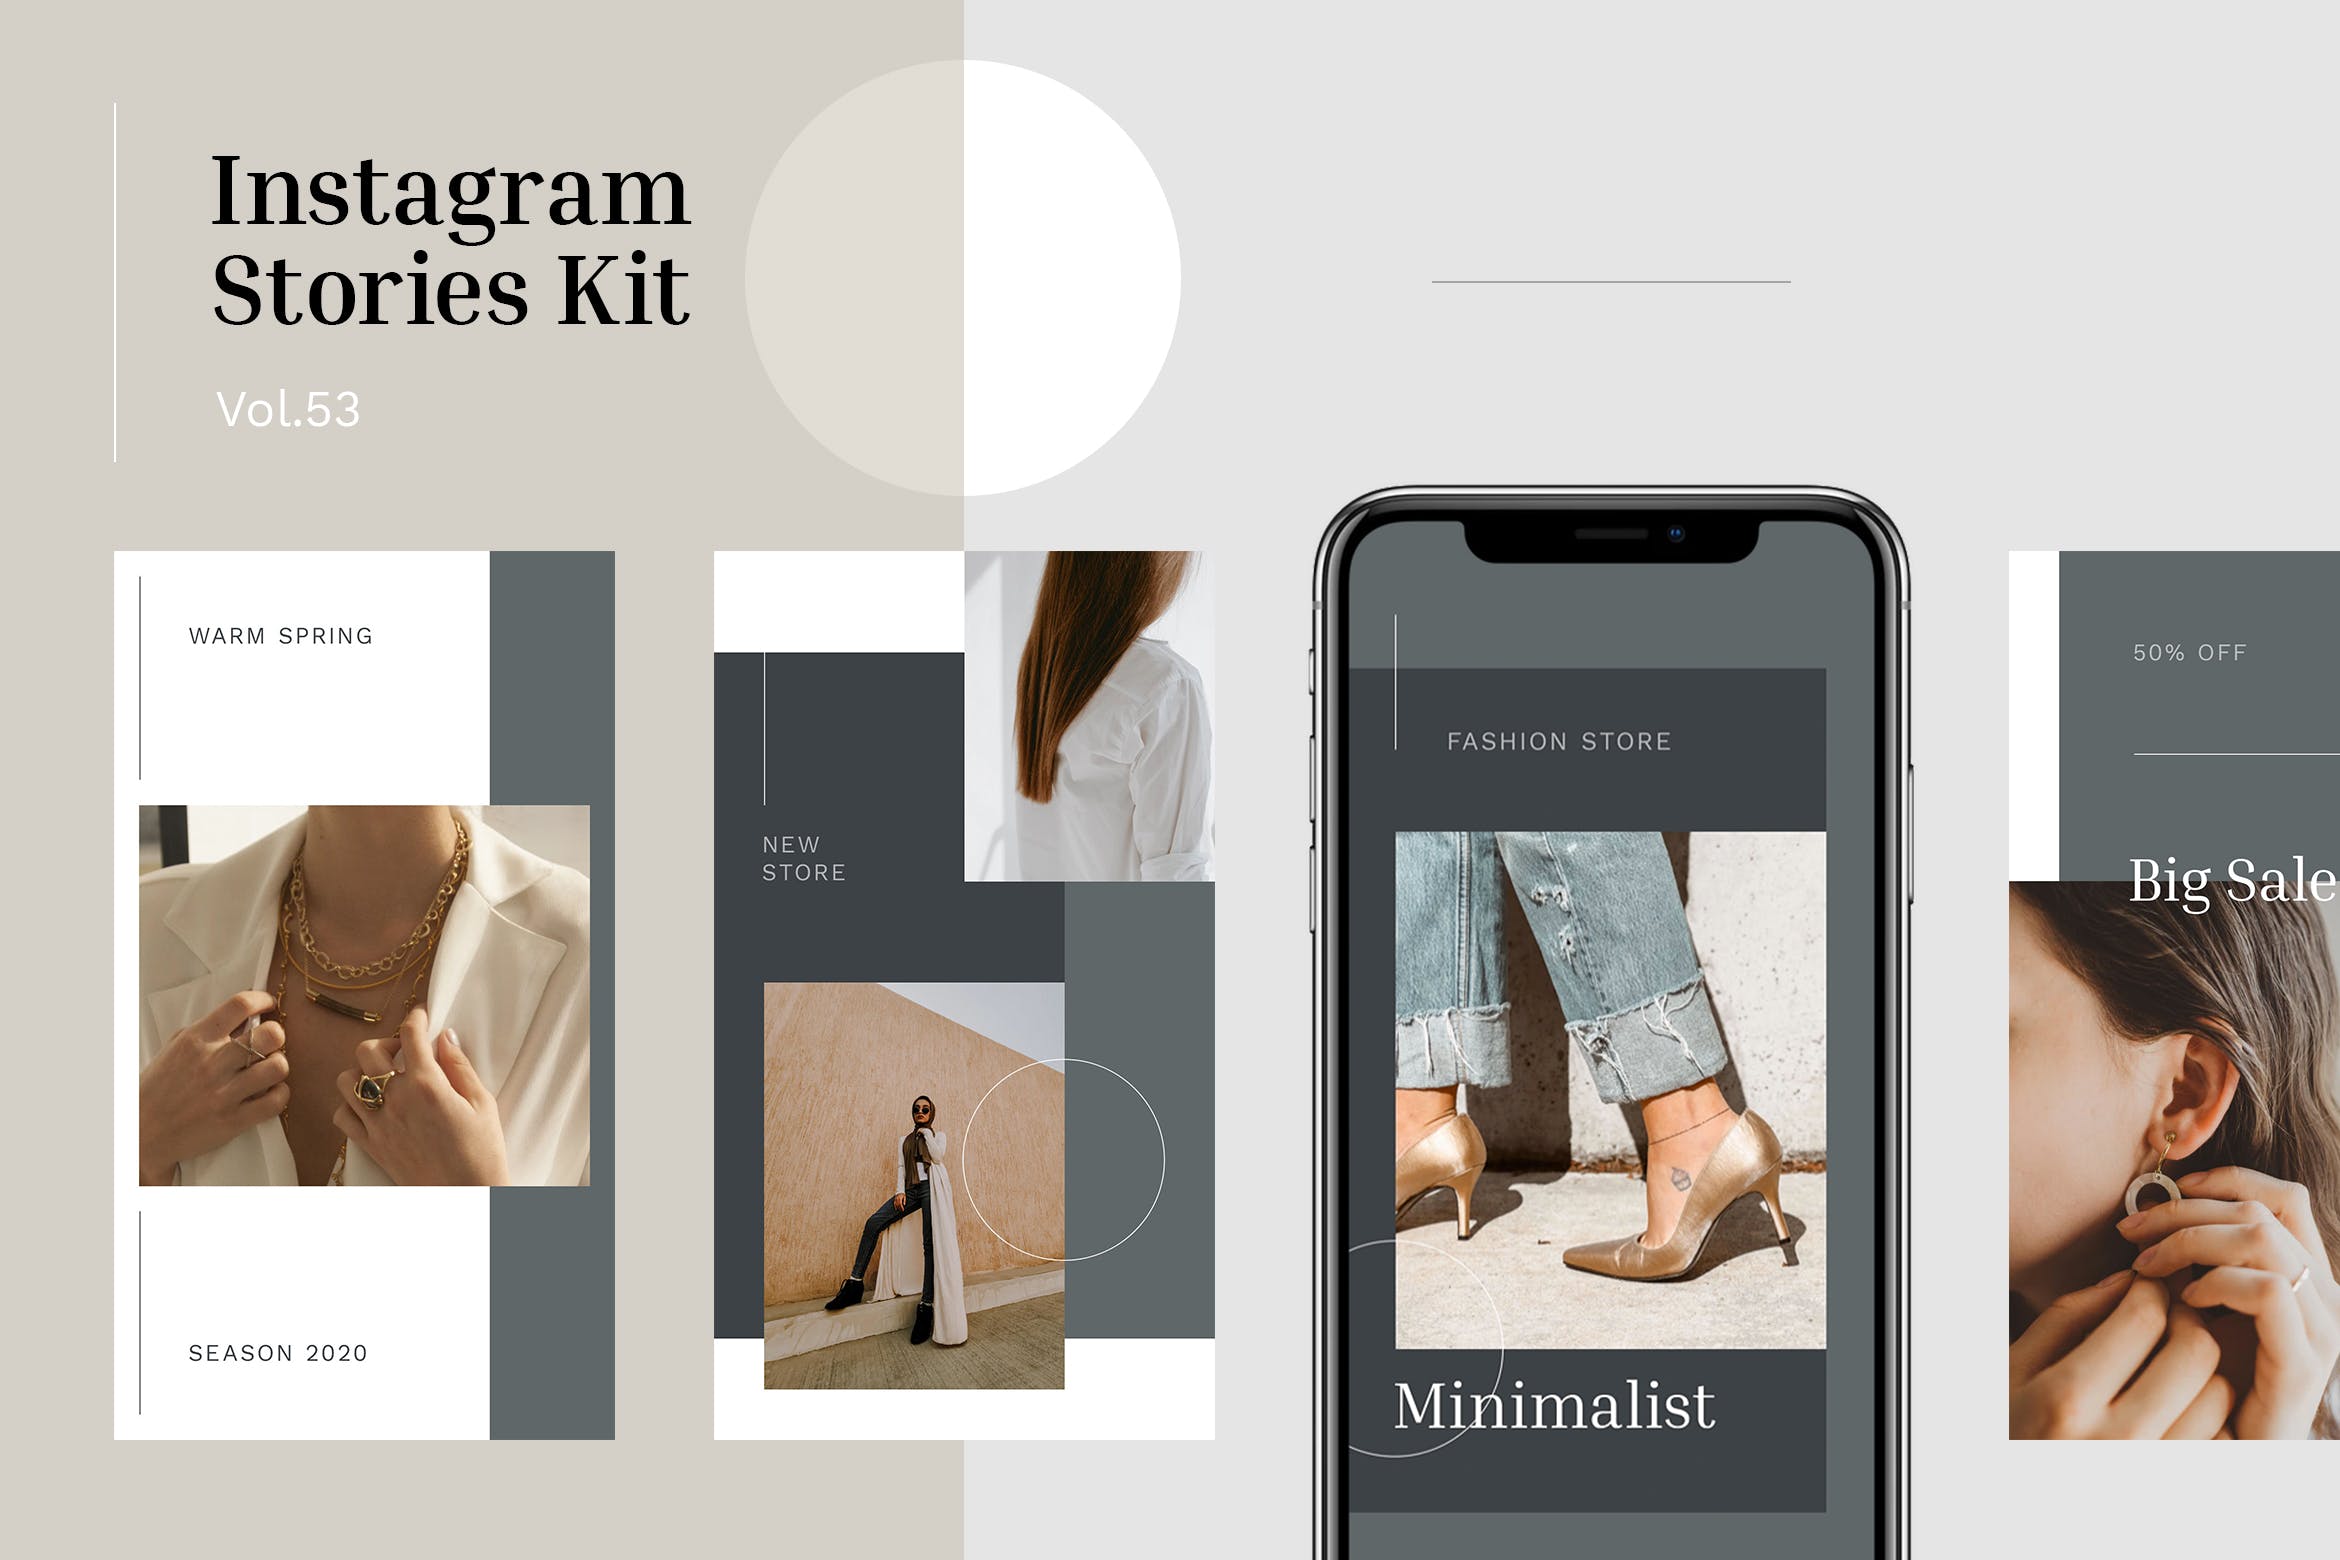 珠宝首饰品牌Instagram社交素材包v53 Instagram Stories Kit (Vol.53)插图